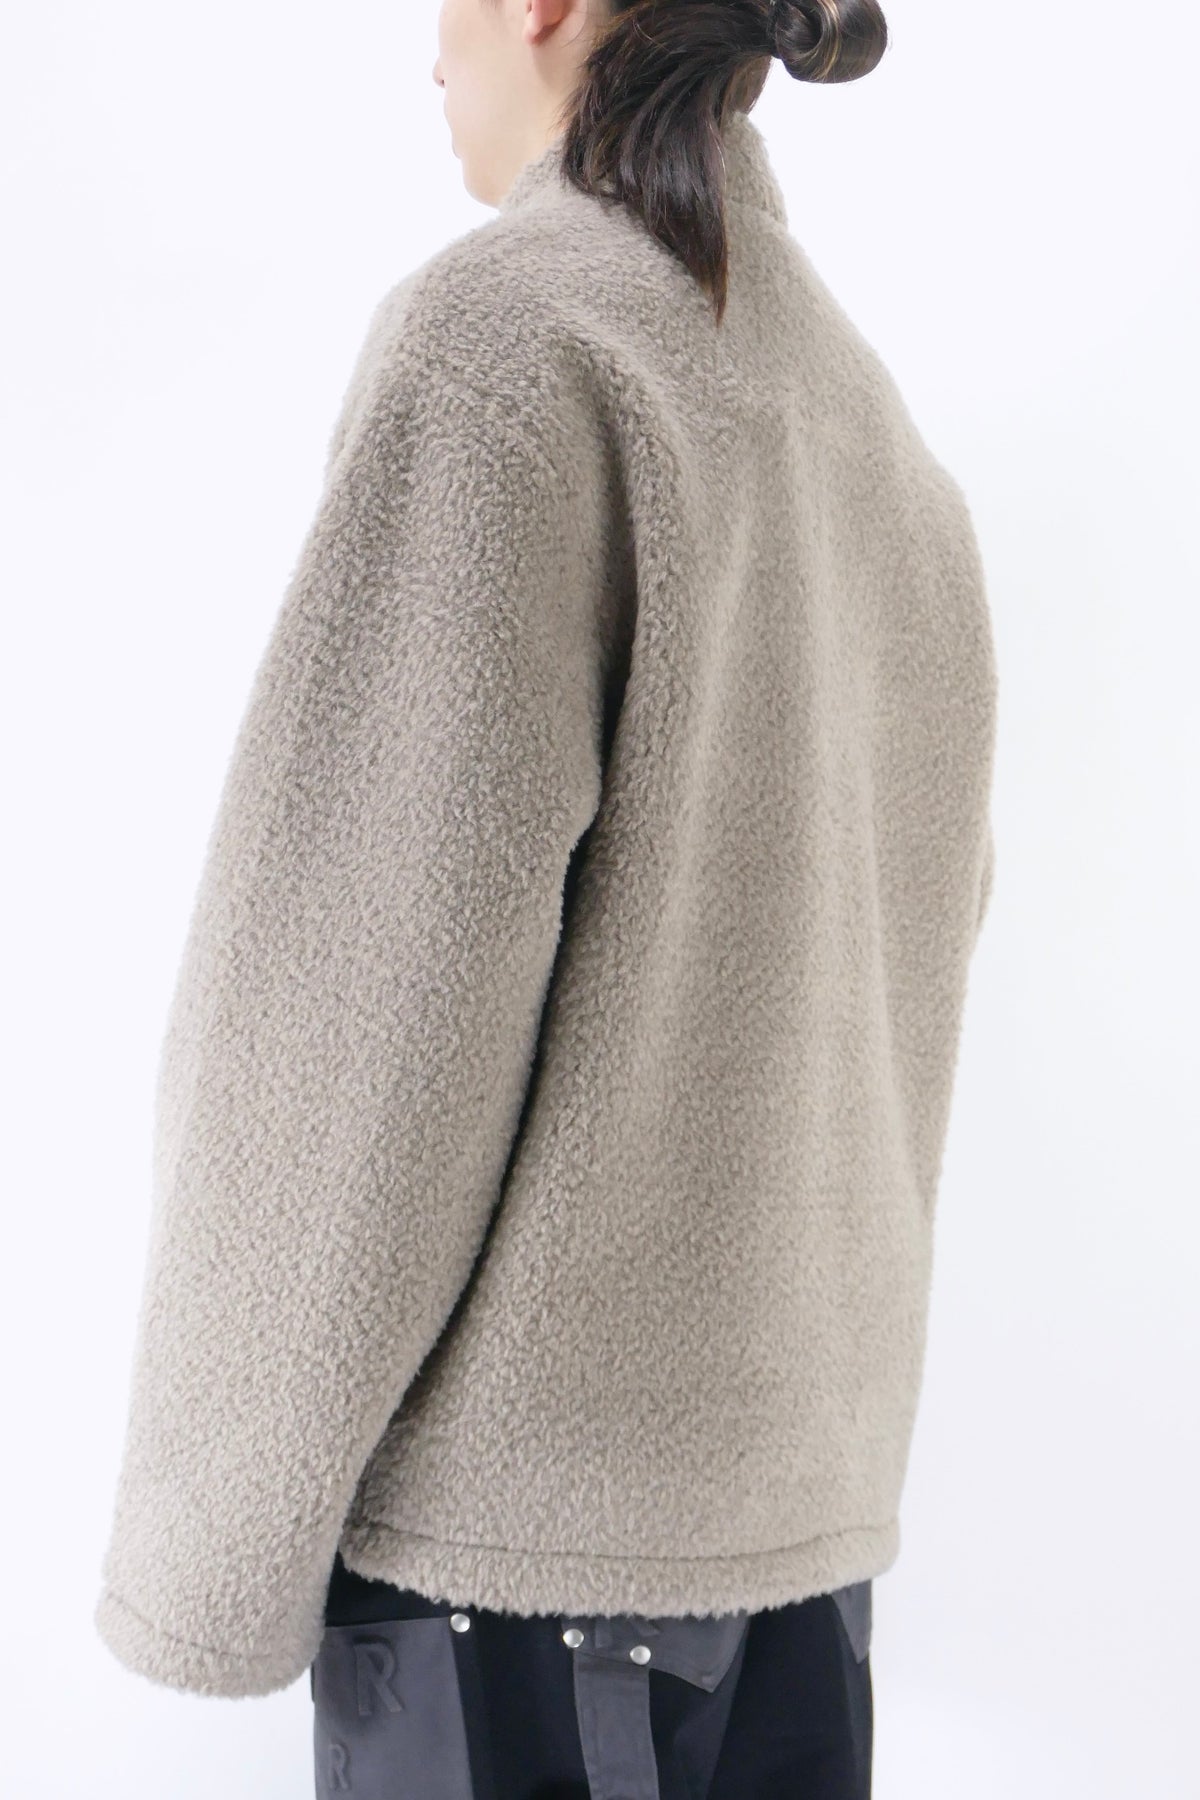 Represent Fleece Pullover Jacket - Mushroom